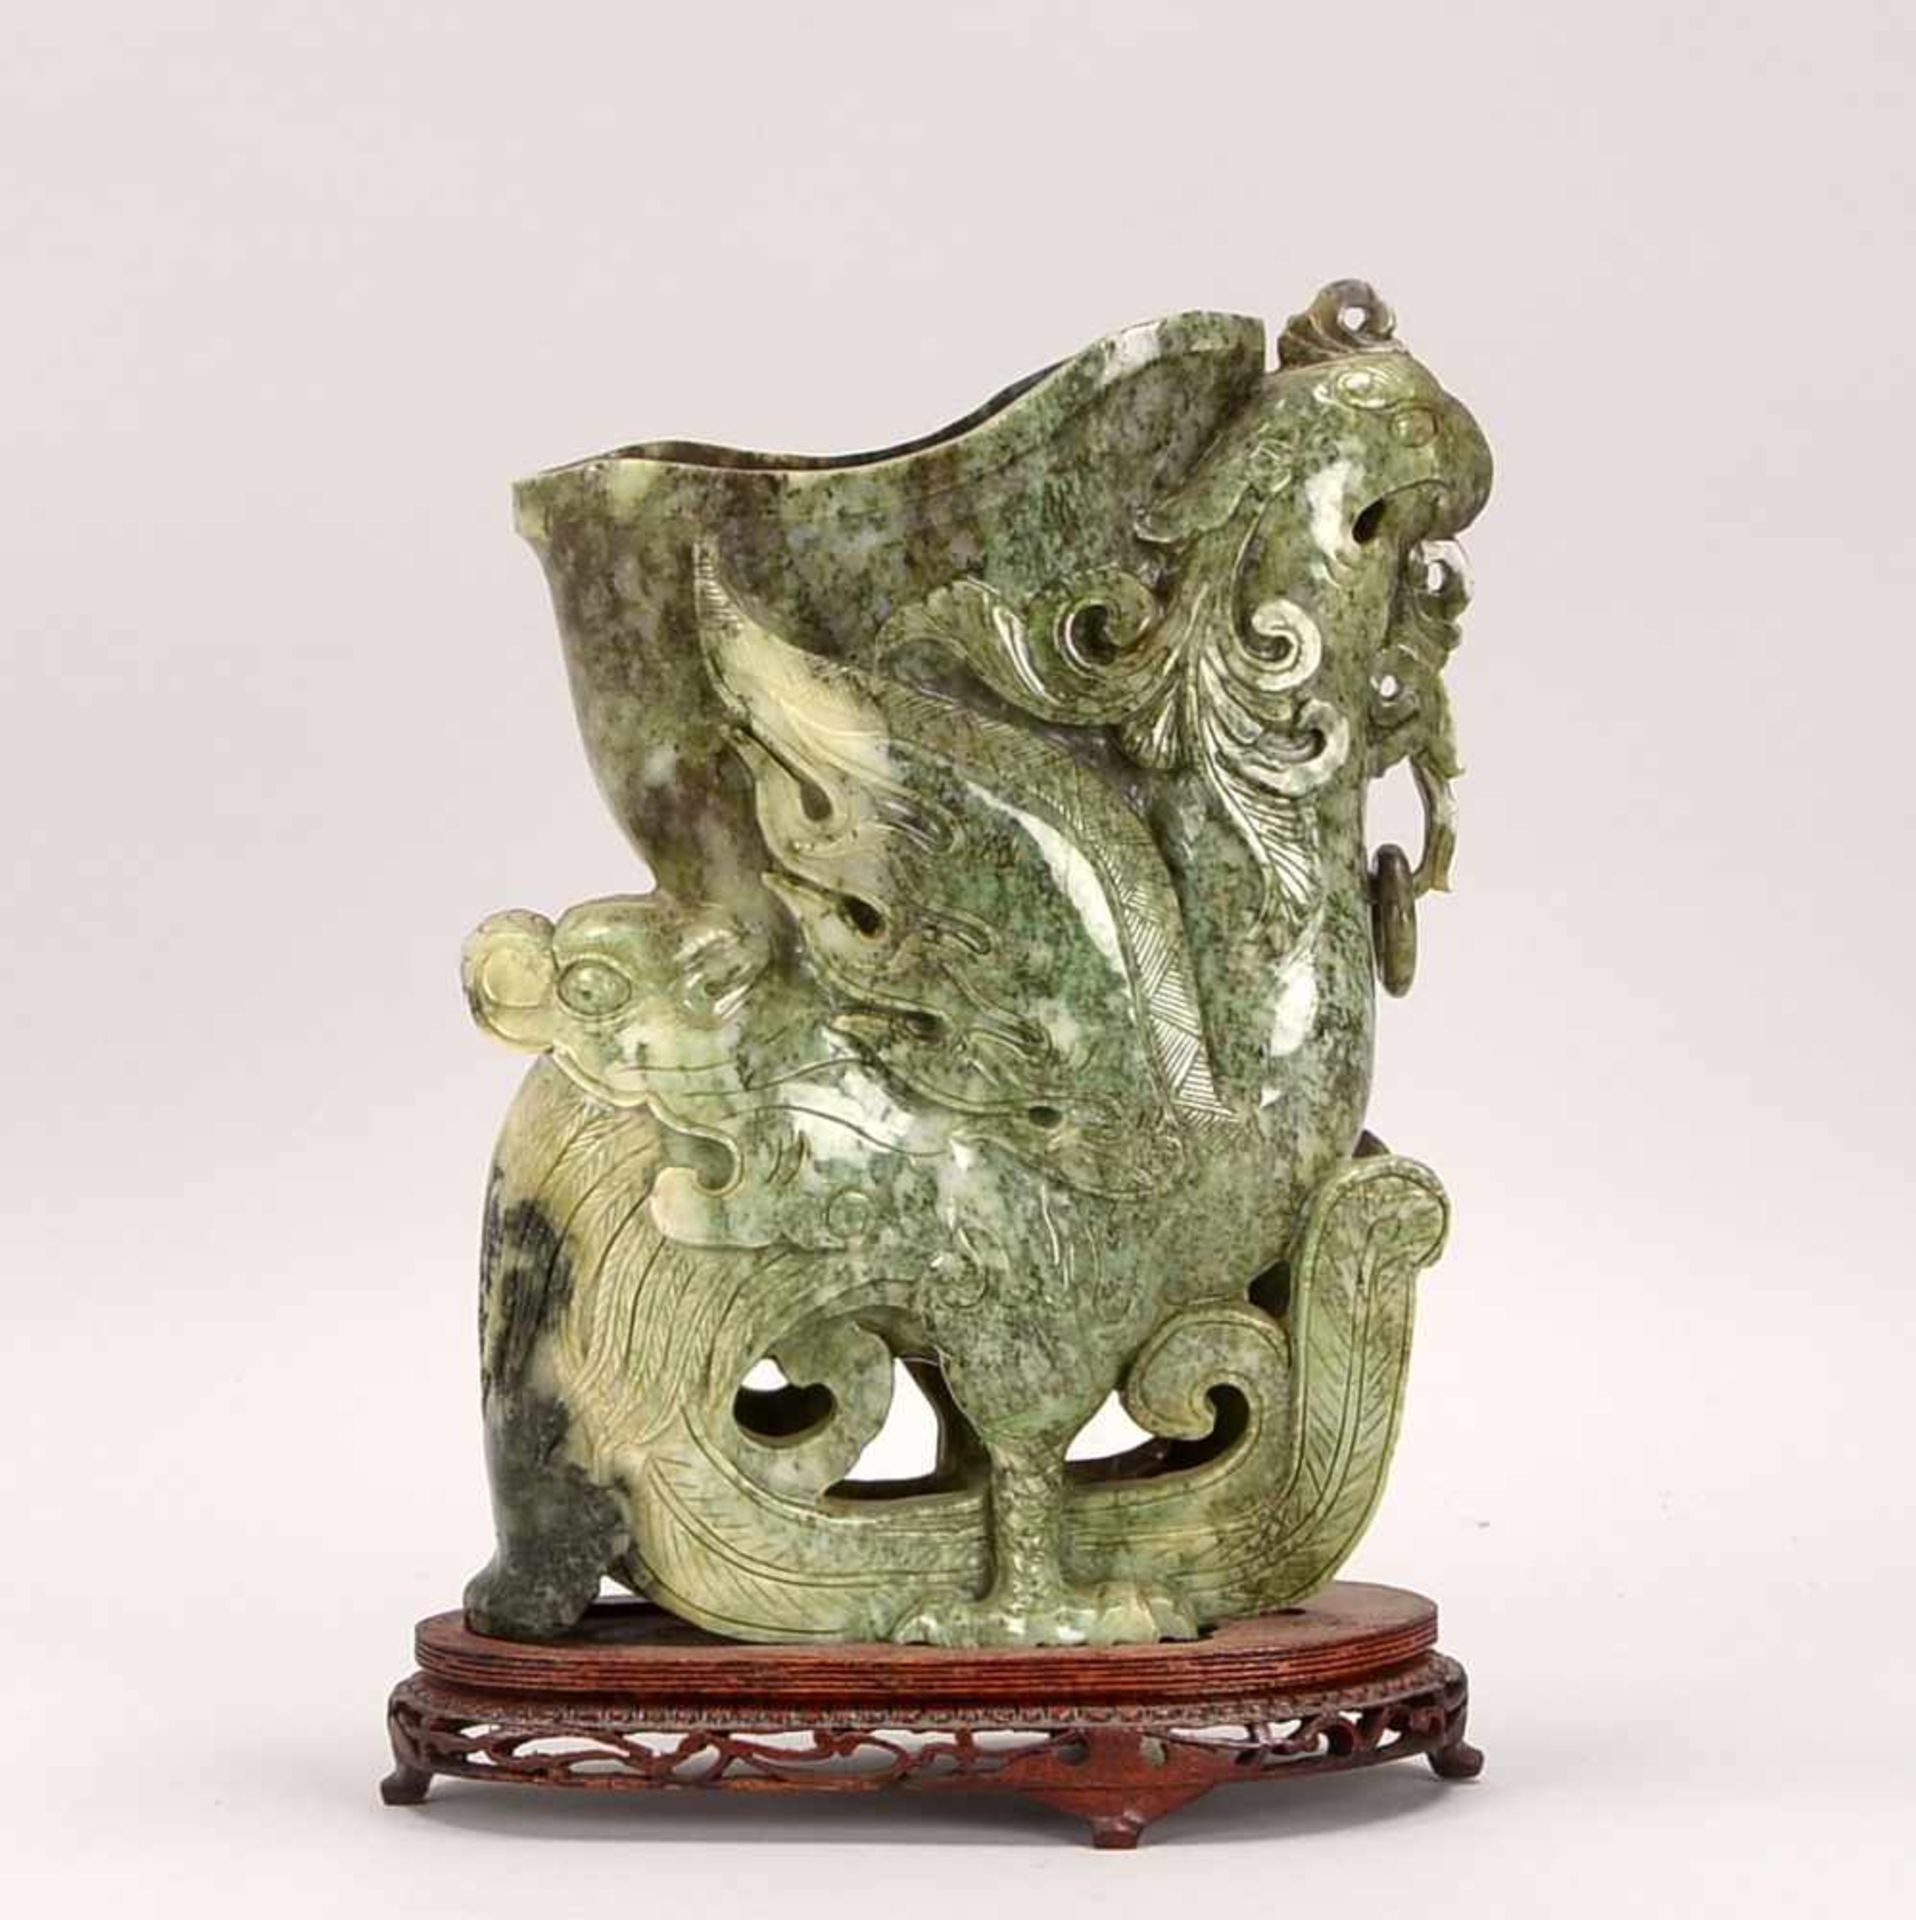 Große Vase, grünbraun-olivfarbene Jade, mit durchbrochen geschliffener vollplastischer